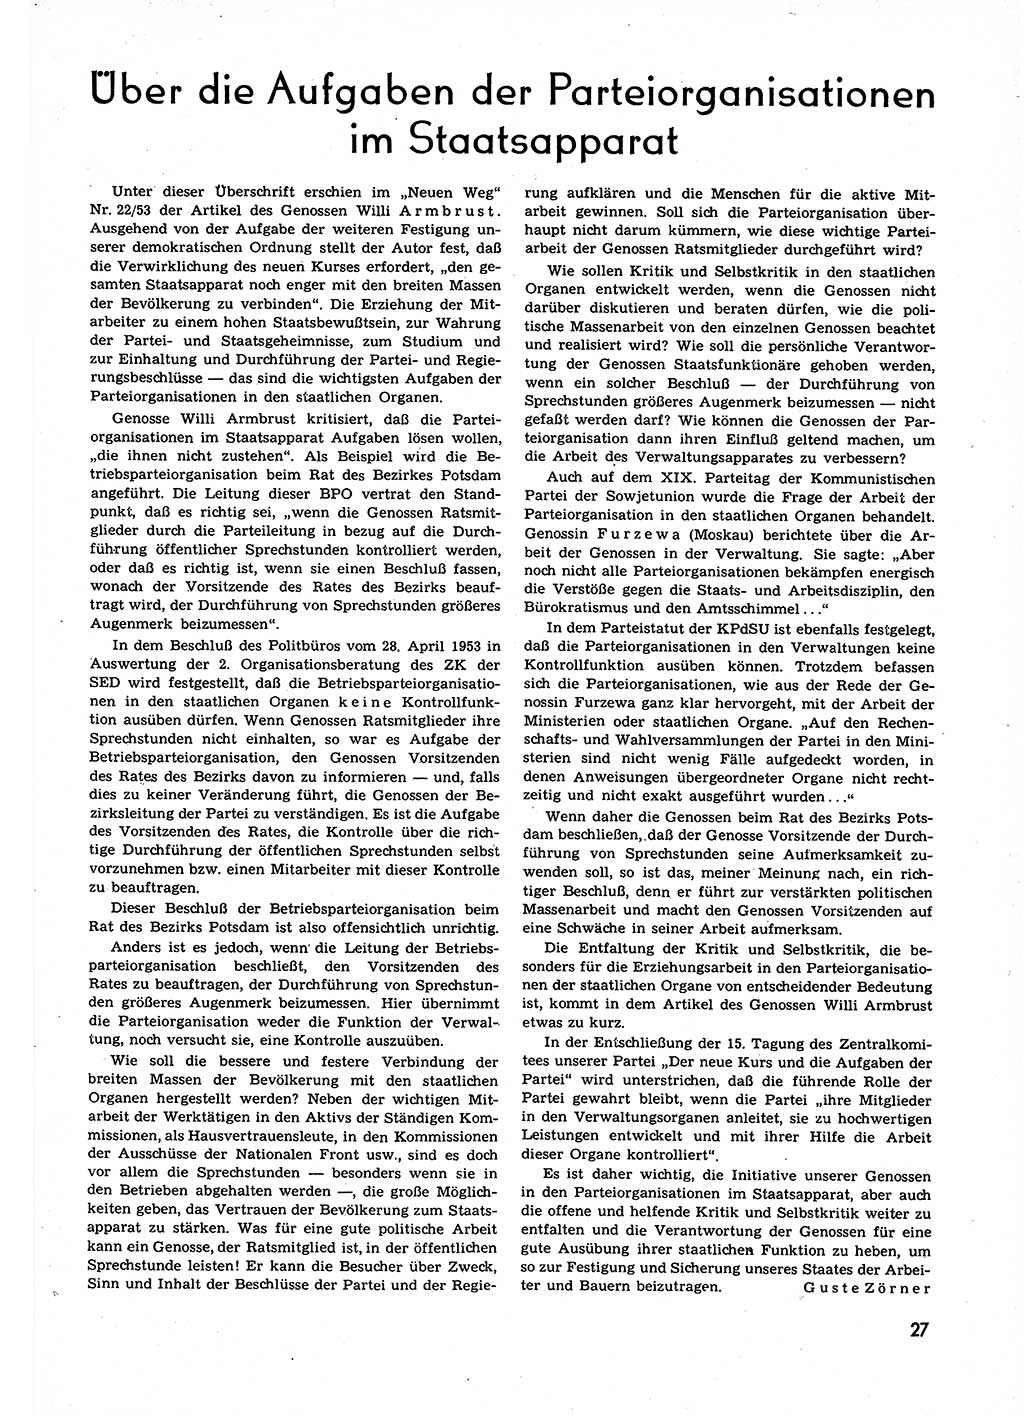 Neuer Weg (NW), Organ des Zentralkomitees (ZK) der SED (Sozialistische Einheitspartei Deutschlands) für alle Parteiarbeiter, 9. Jahrgang [Deutsche Demokratische Republik (DDR)] 1954, Heft 3/27 (NW ZK SED DDR 1954, H. 3/27)